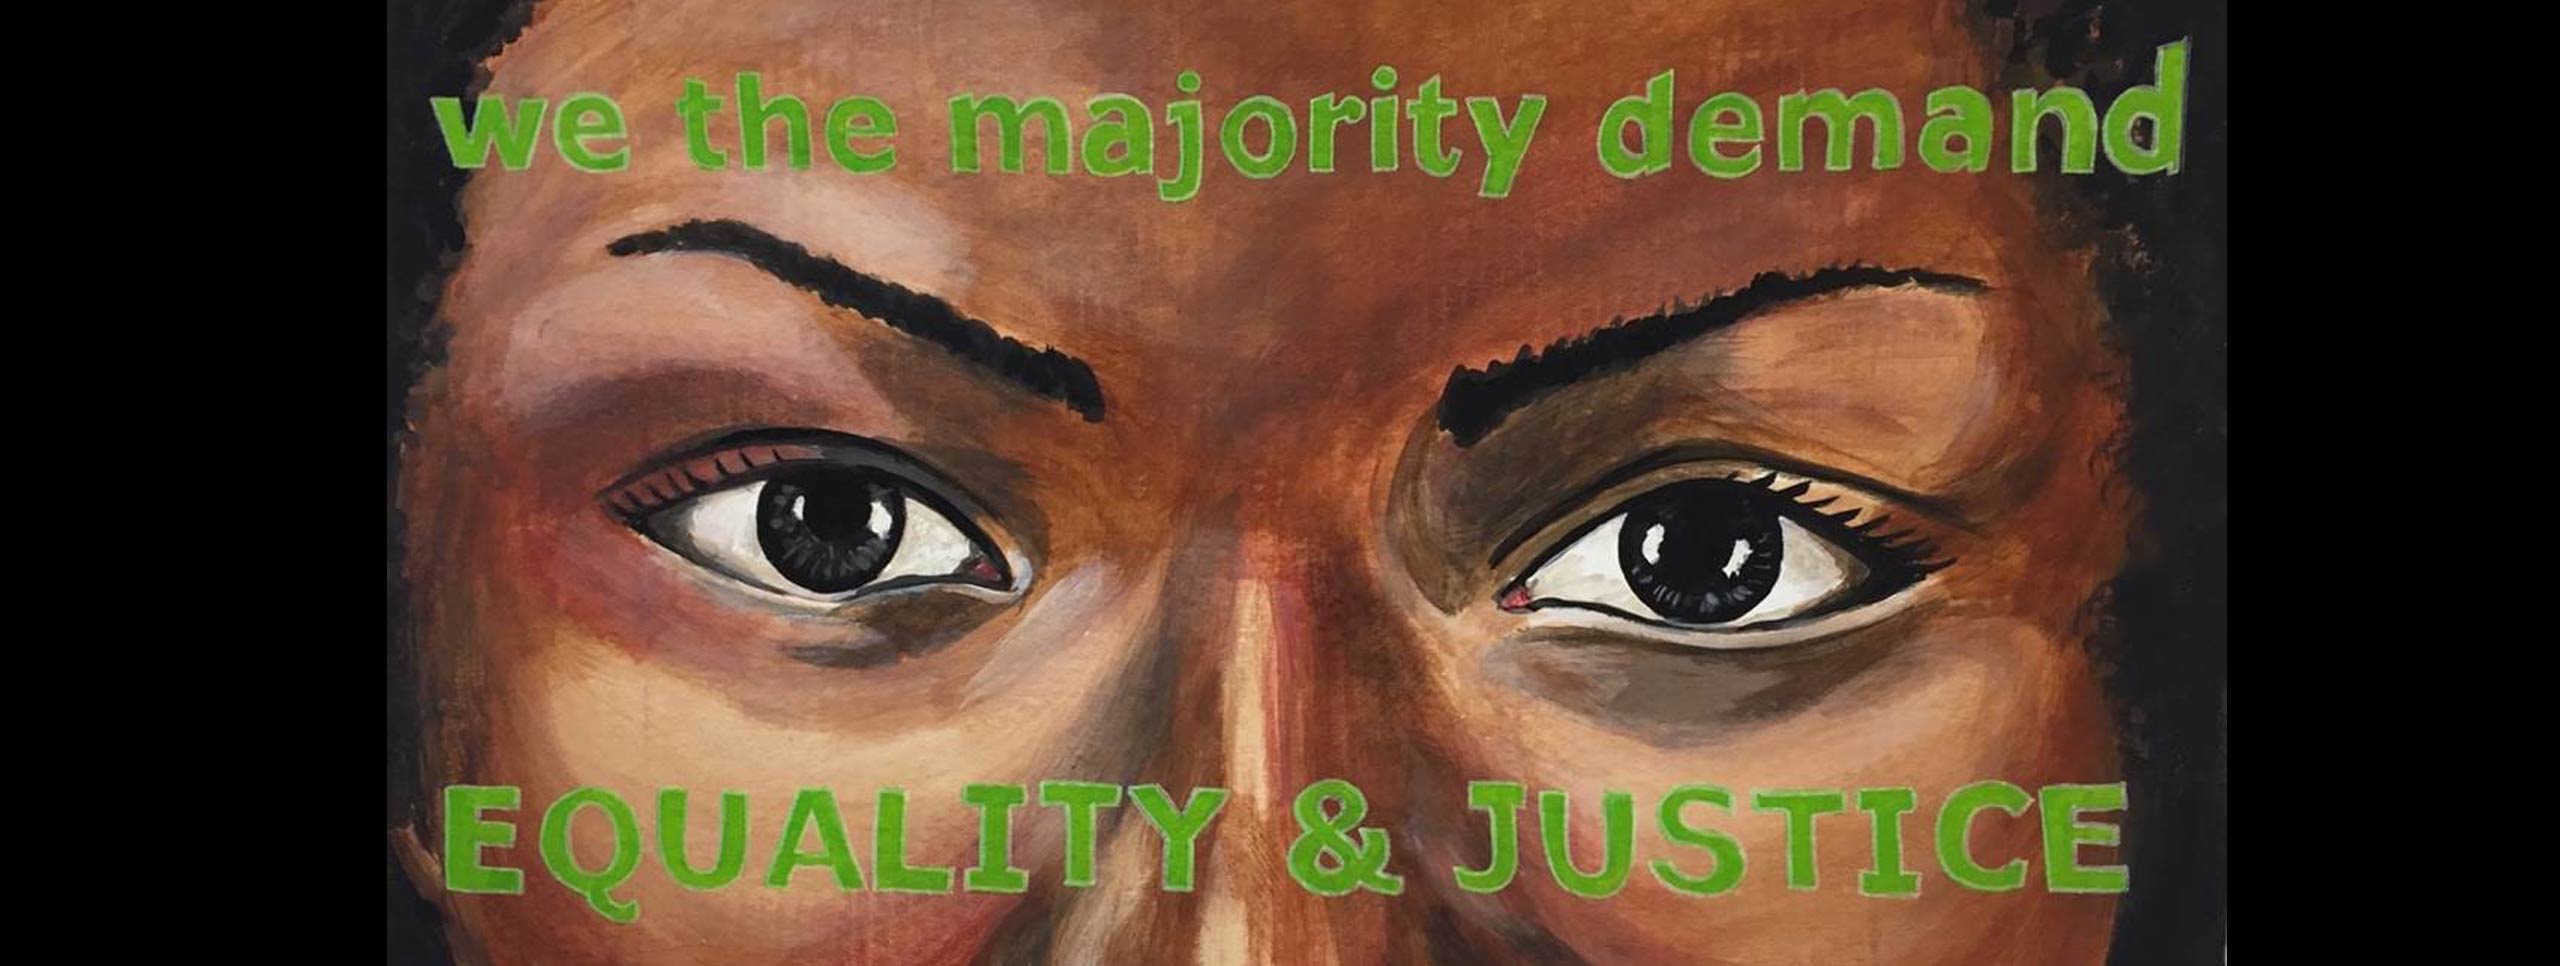 女性の目の絵。 彼女の額と頬に描かれているのは、「私たちが大多数の要求/平等と正義」という言葉です。